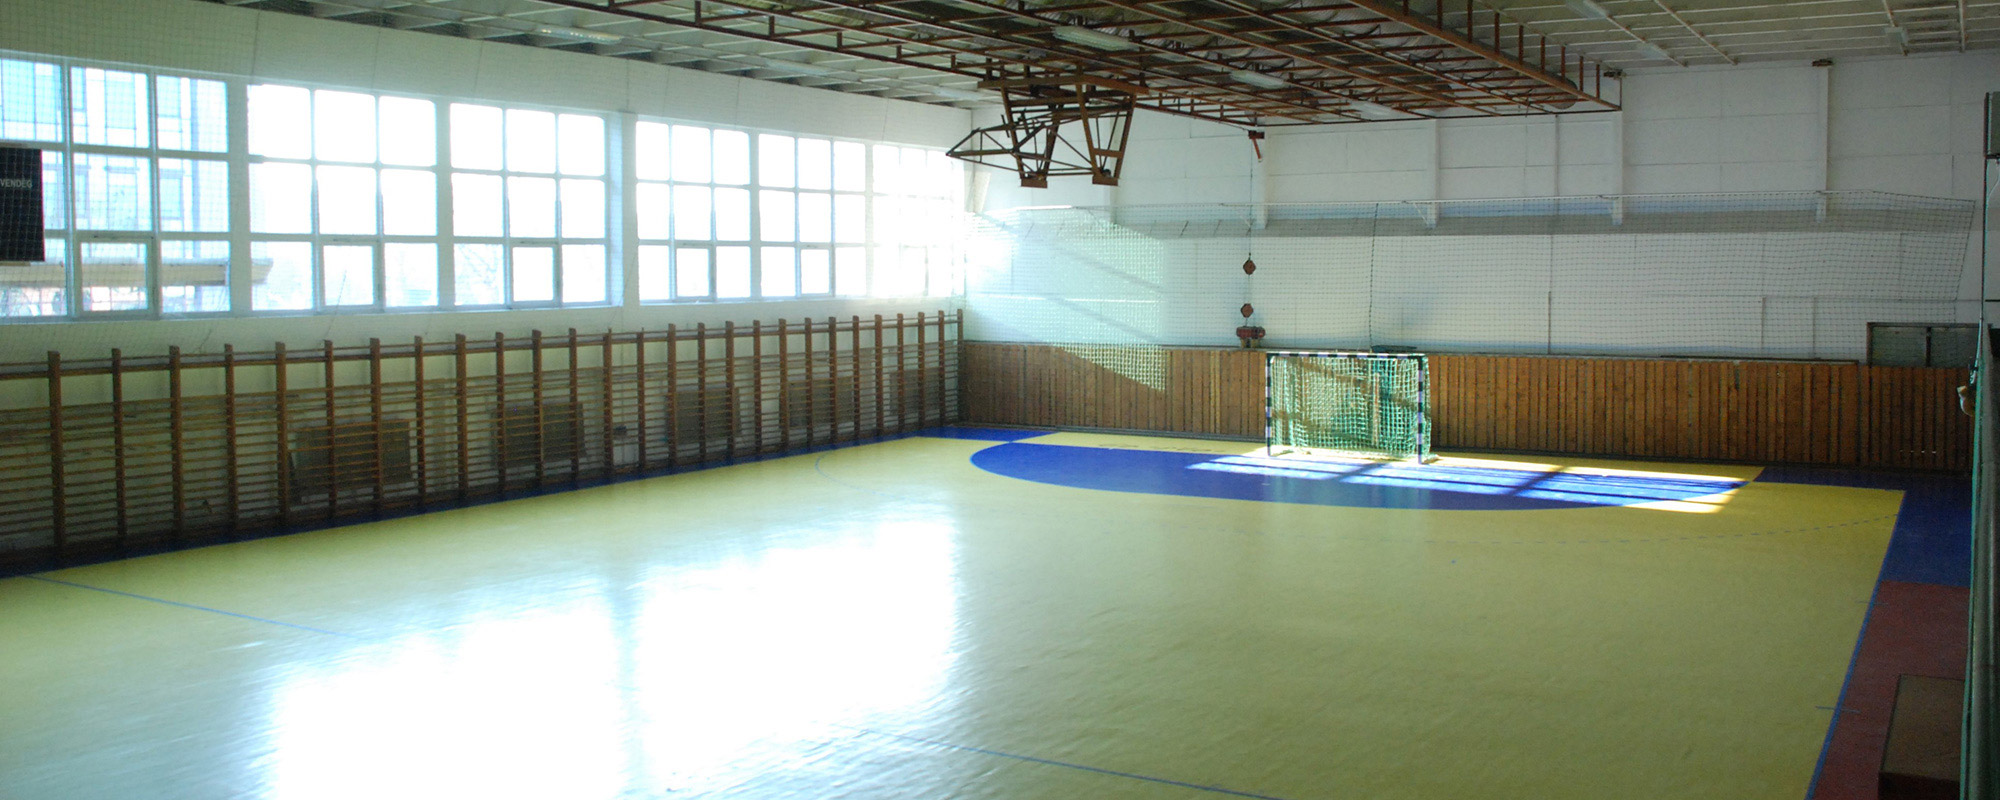 Pénzügyőr Sportcsarnok rekonstrukció – 2013